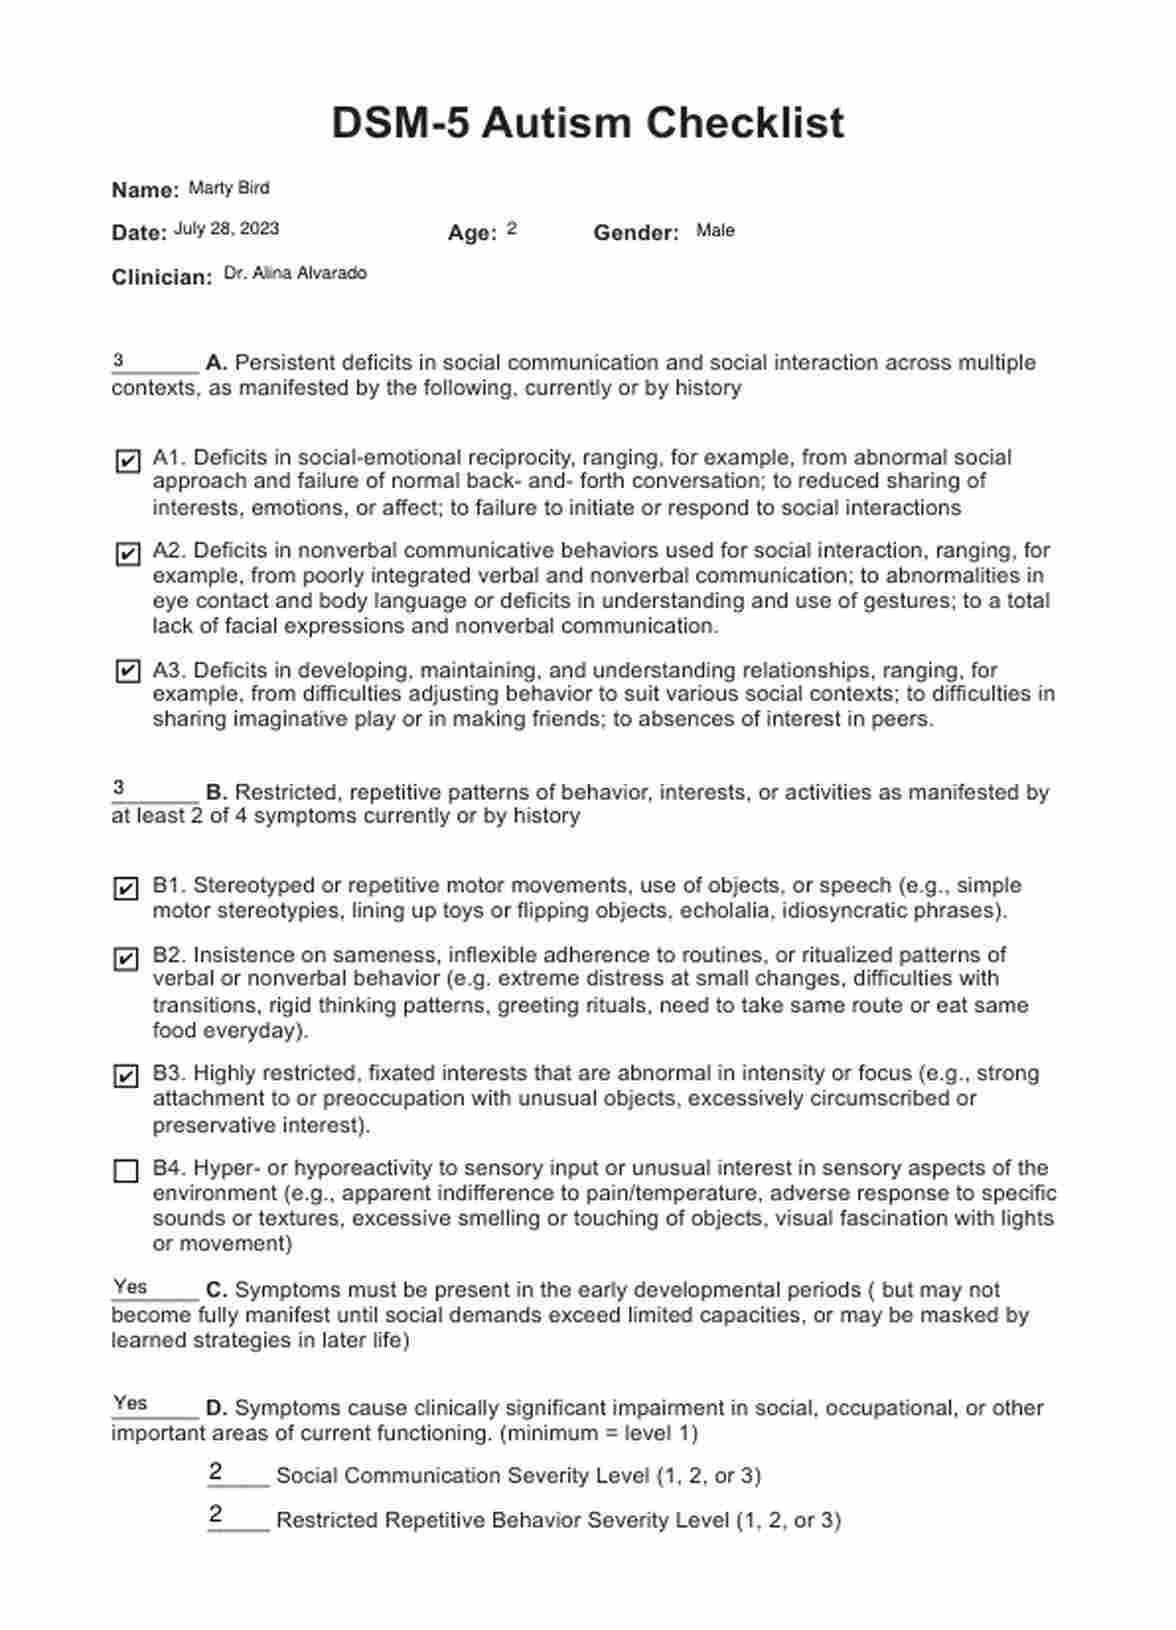 DSM 5 Autism Criteria Checklist PDF Example